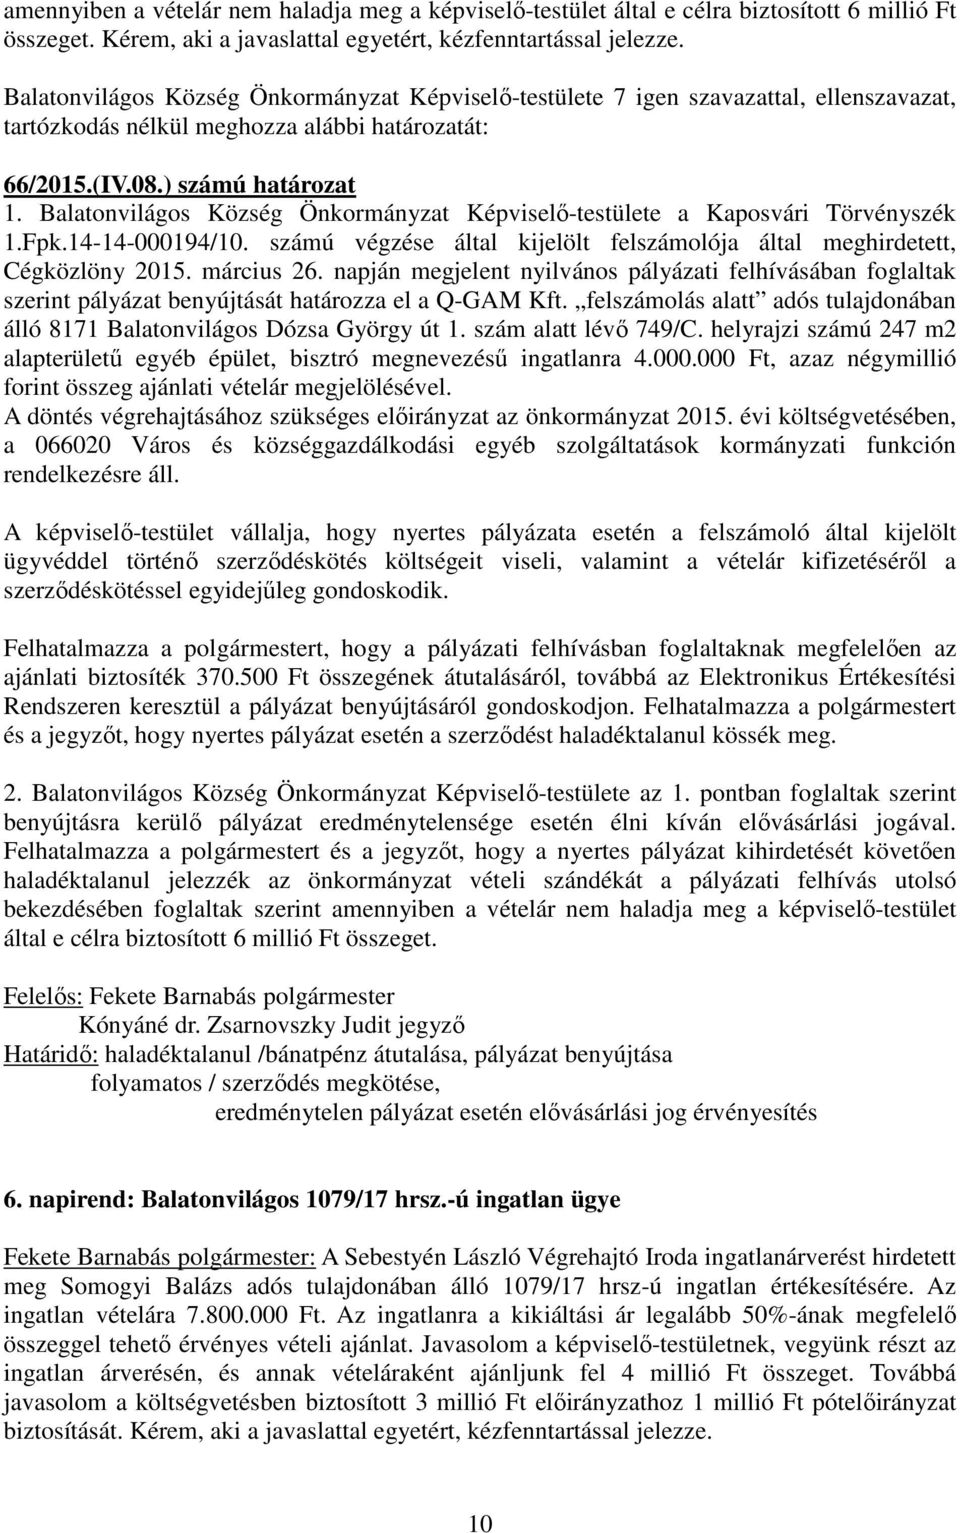 Balatonvilágos Község Önkormányzat Képviselő-testülete a Kaposvári Törvényszék 1.Fpk.14-14-000194/10. számú végzése által kijelölt felszámolója által meghirdetett, Cégközlöny 2015. március 26.